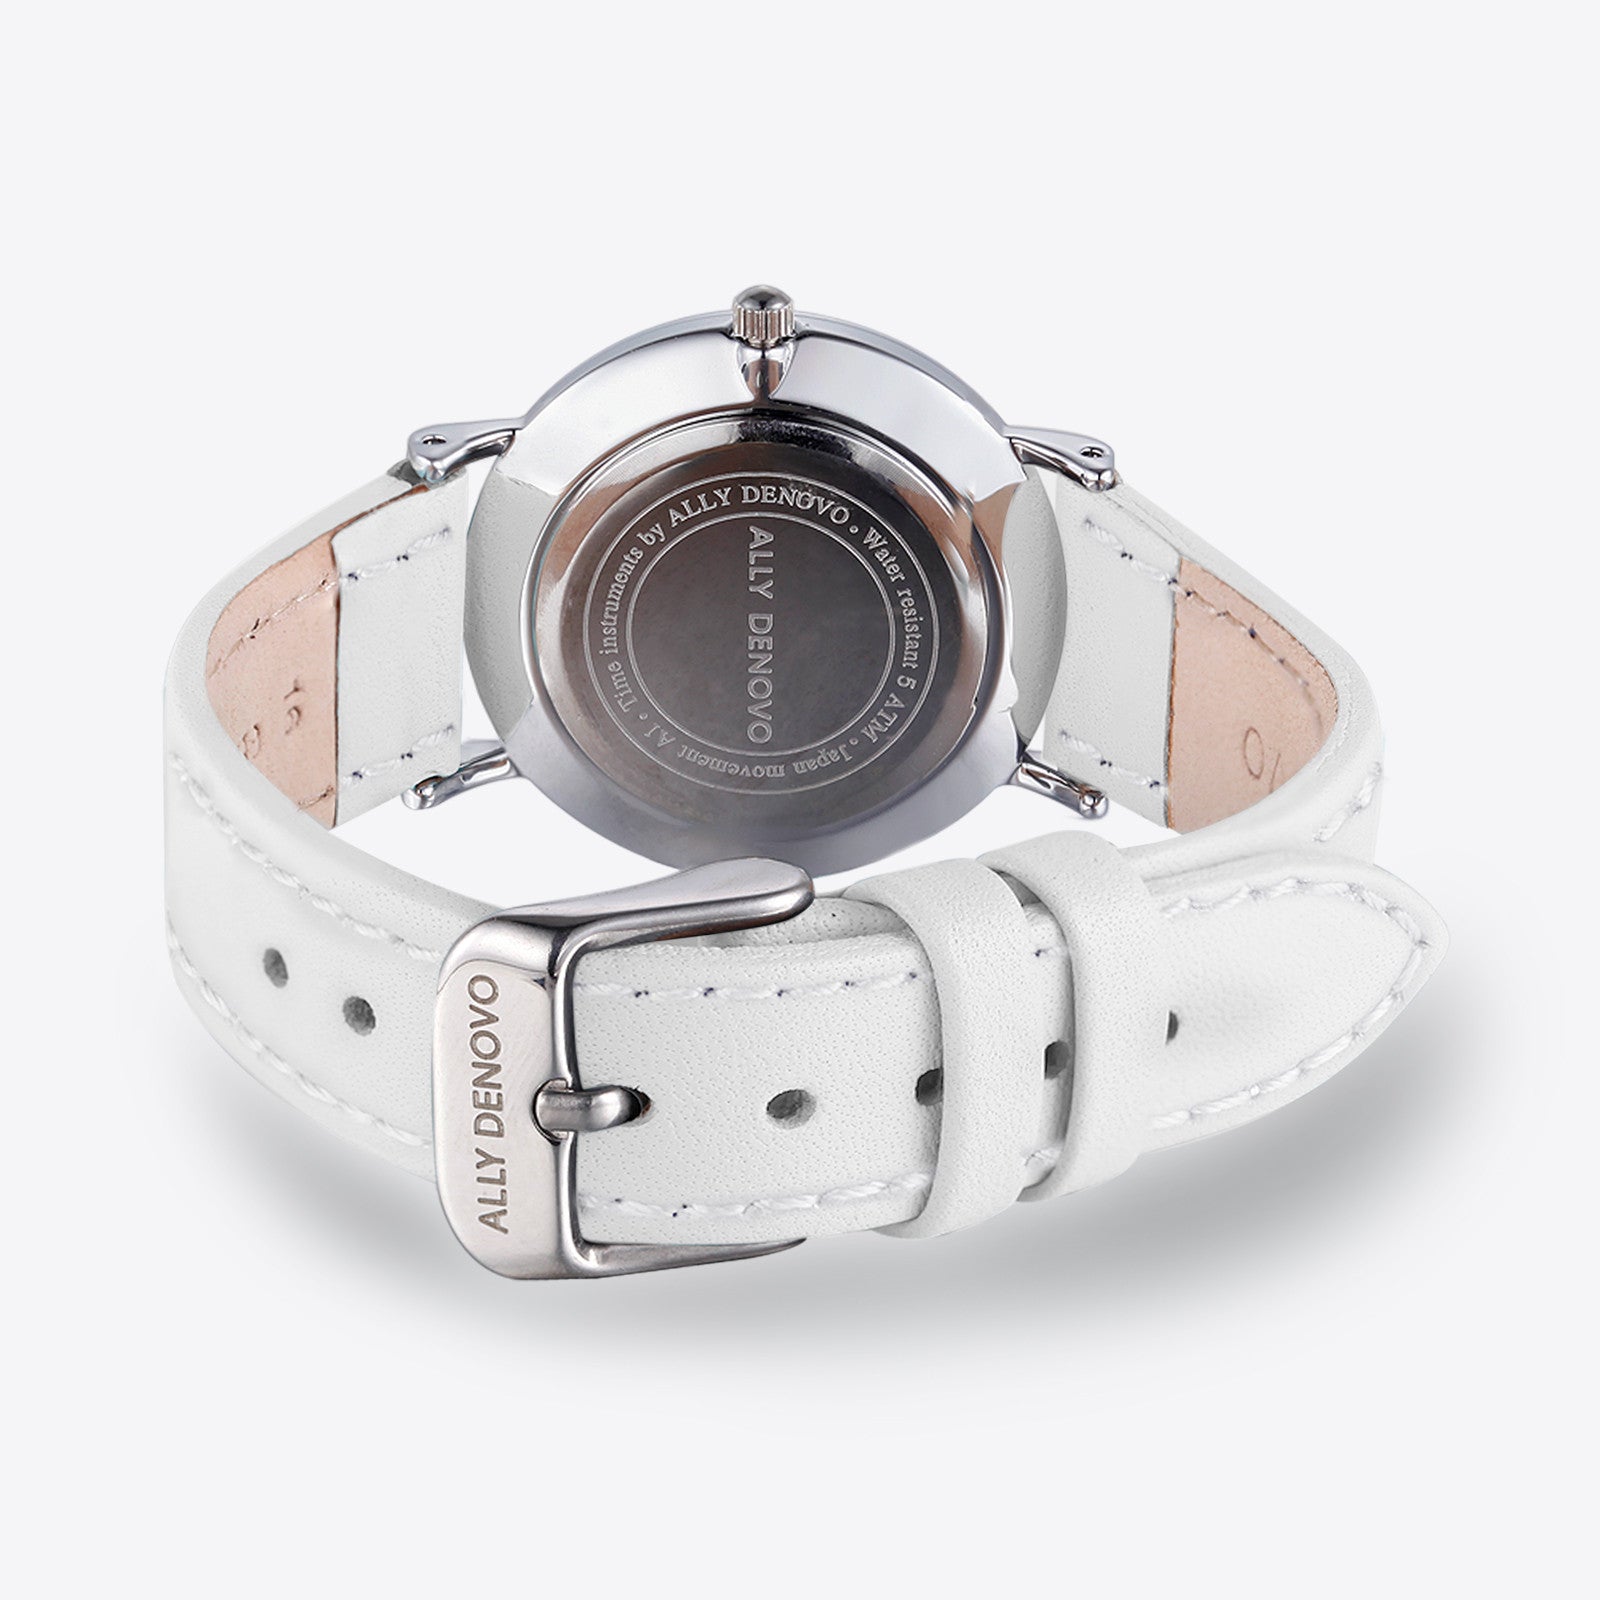 Gaia pearl皮革腕錶-白色菱形琉璃白框白色真皮錶帶 AF5003.6